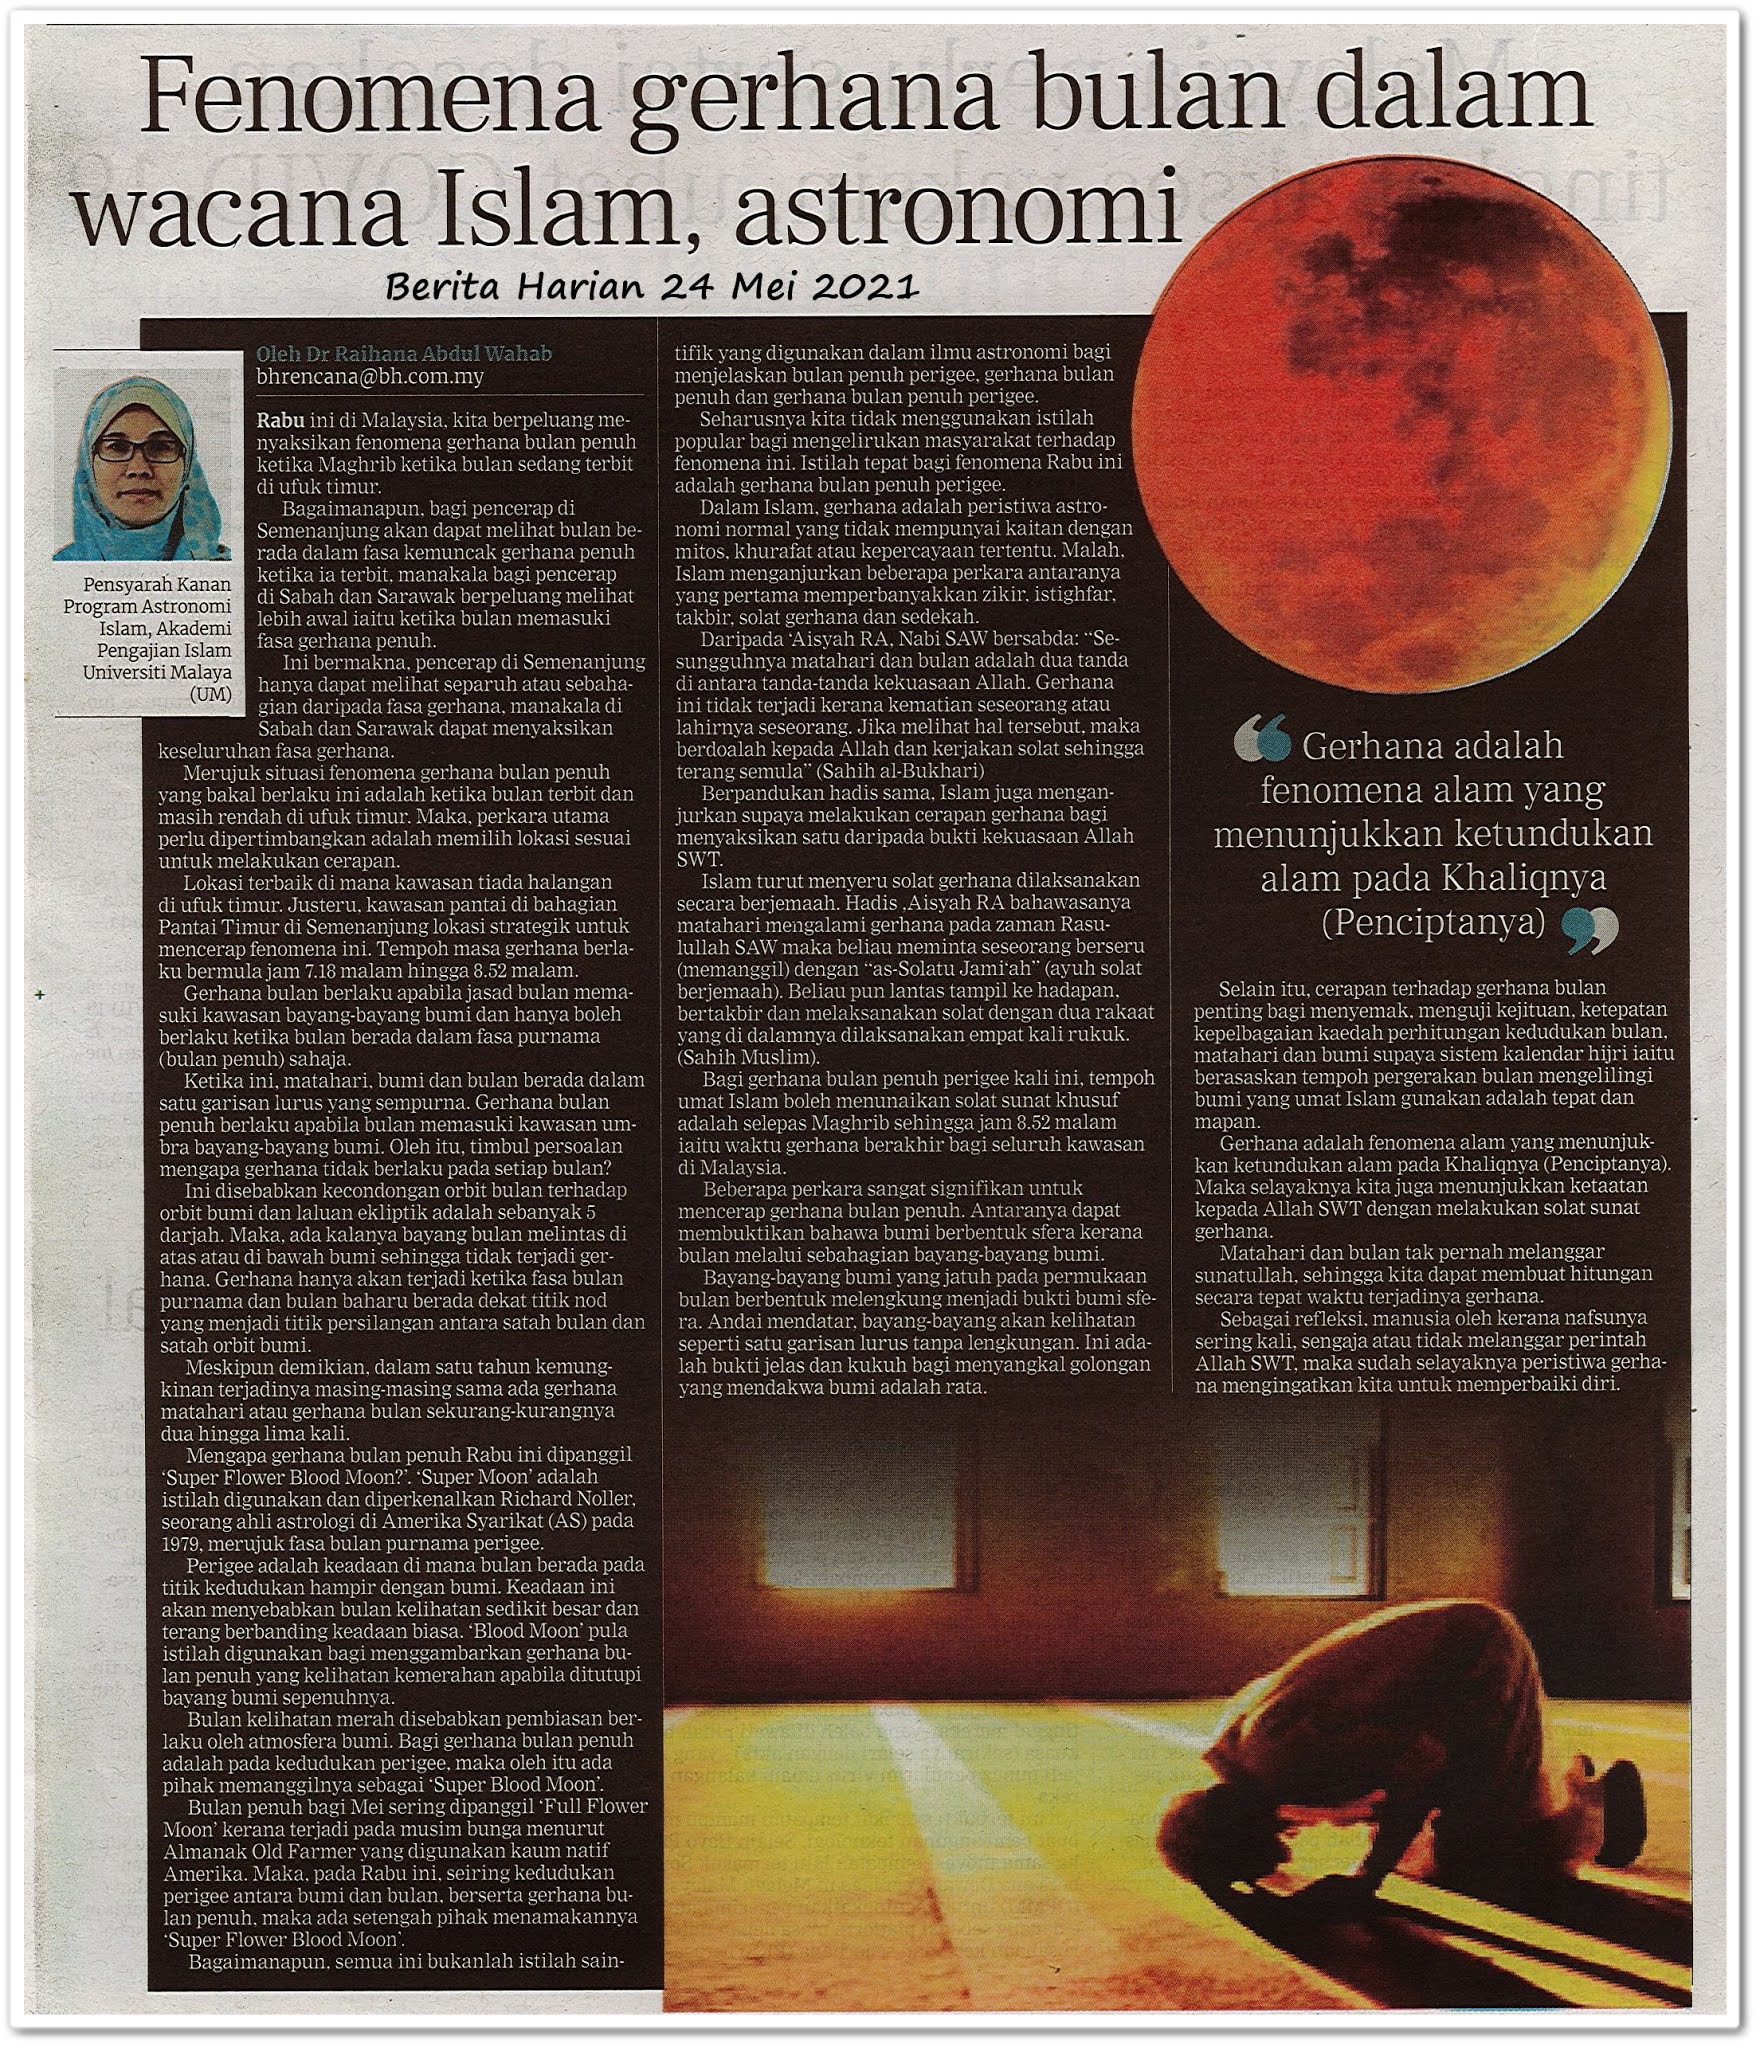 Fenomena gerhana bulan dalam wacana Islam, astronomi - Keratan akhbar Berita Harian 24 Mei 2021